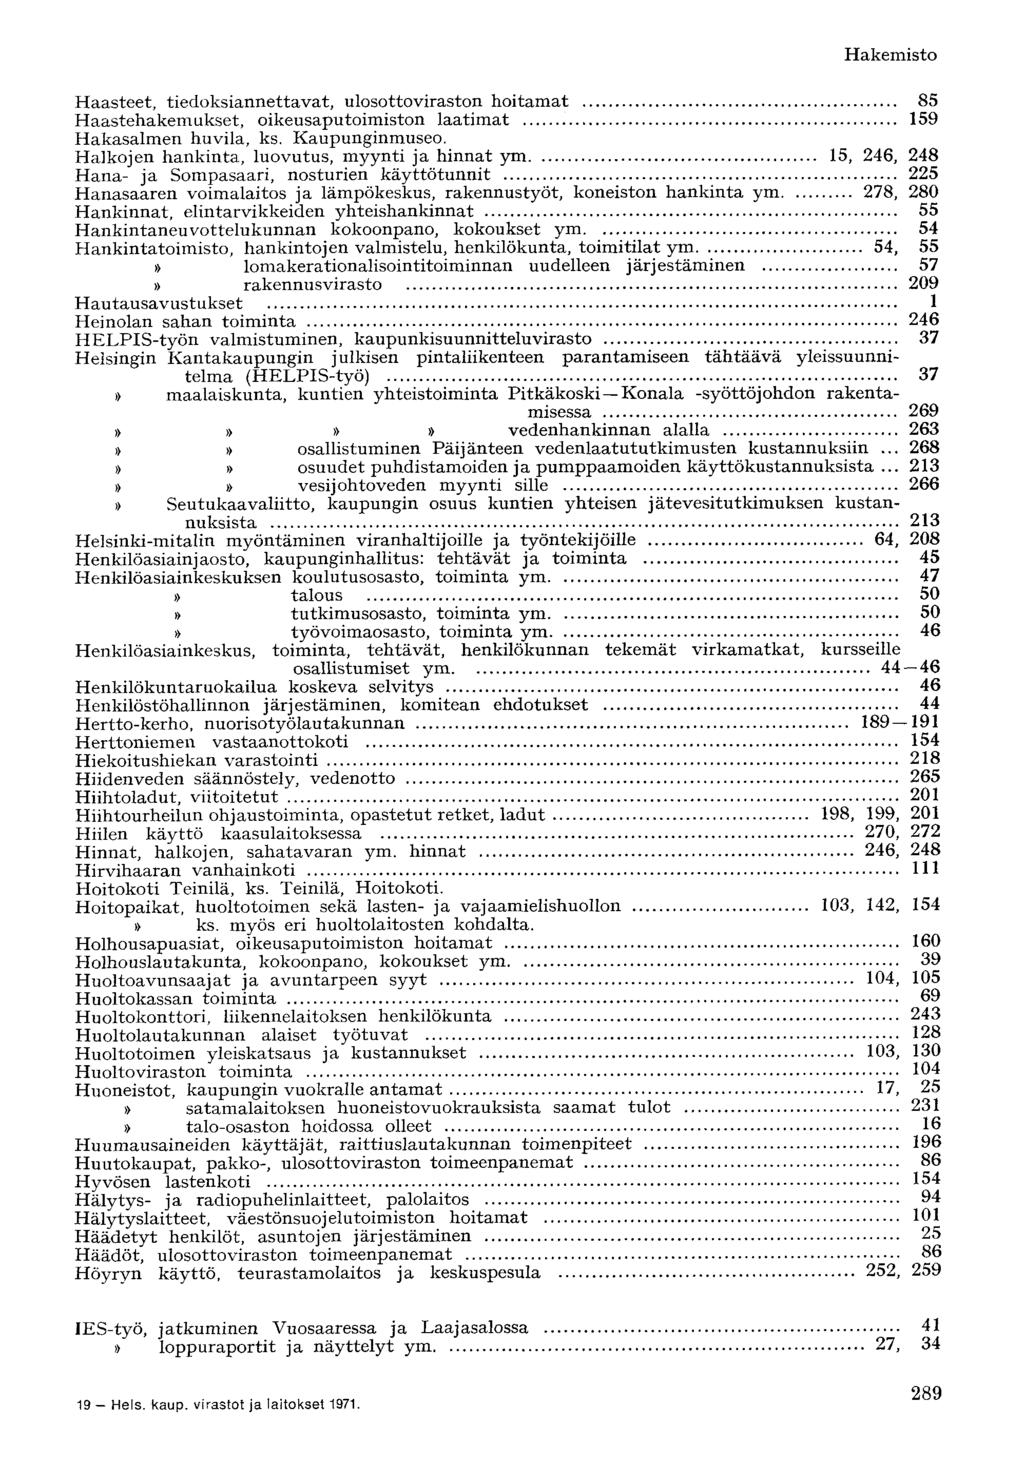 Haasteet, tiedoksiannettavat, ulosottoviraston hoitamat 85 Haastehakemukset, oikeusaputoimiston laatimat 159 Hakasalmen huvila, ks. Kaupunginmuseo.